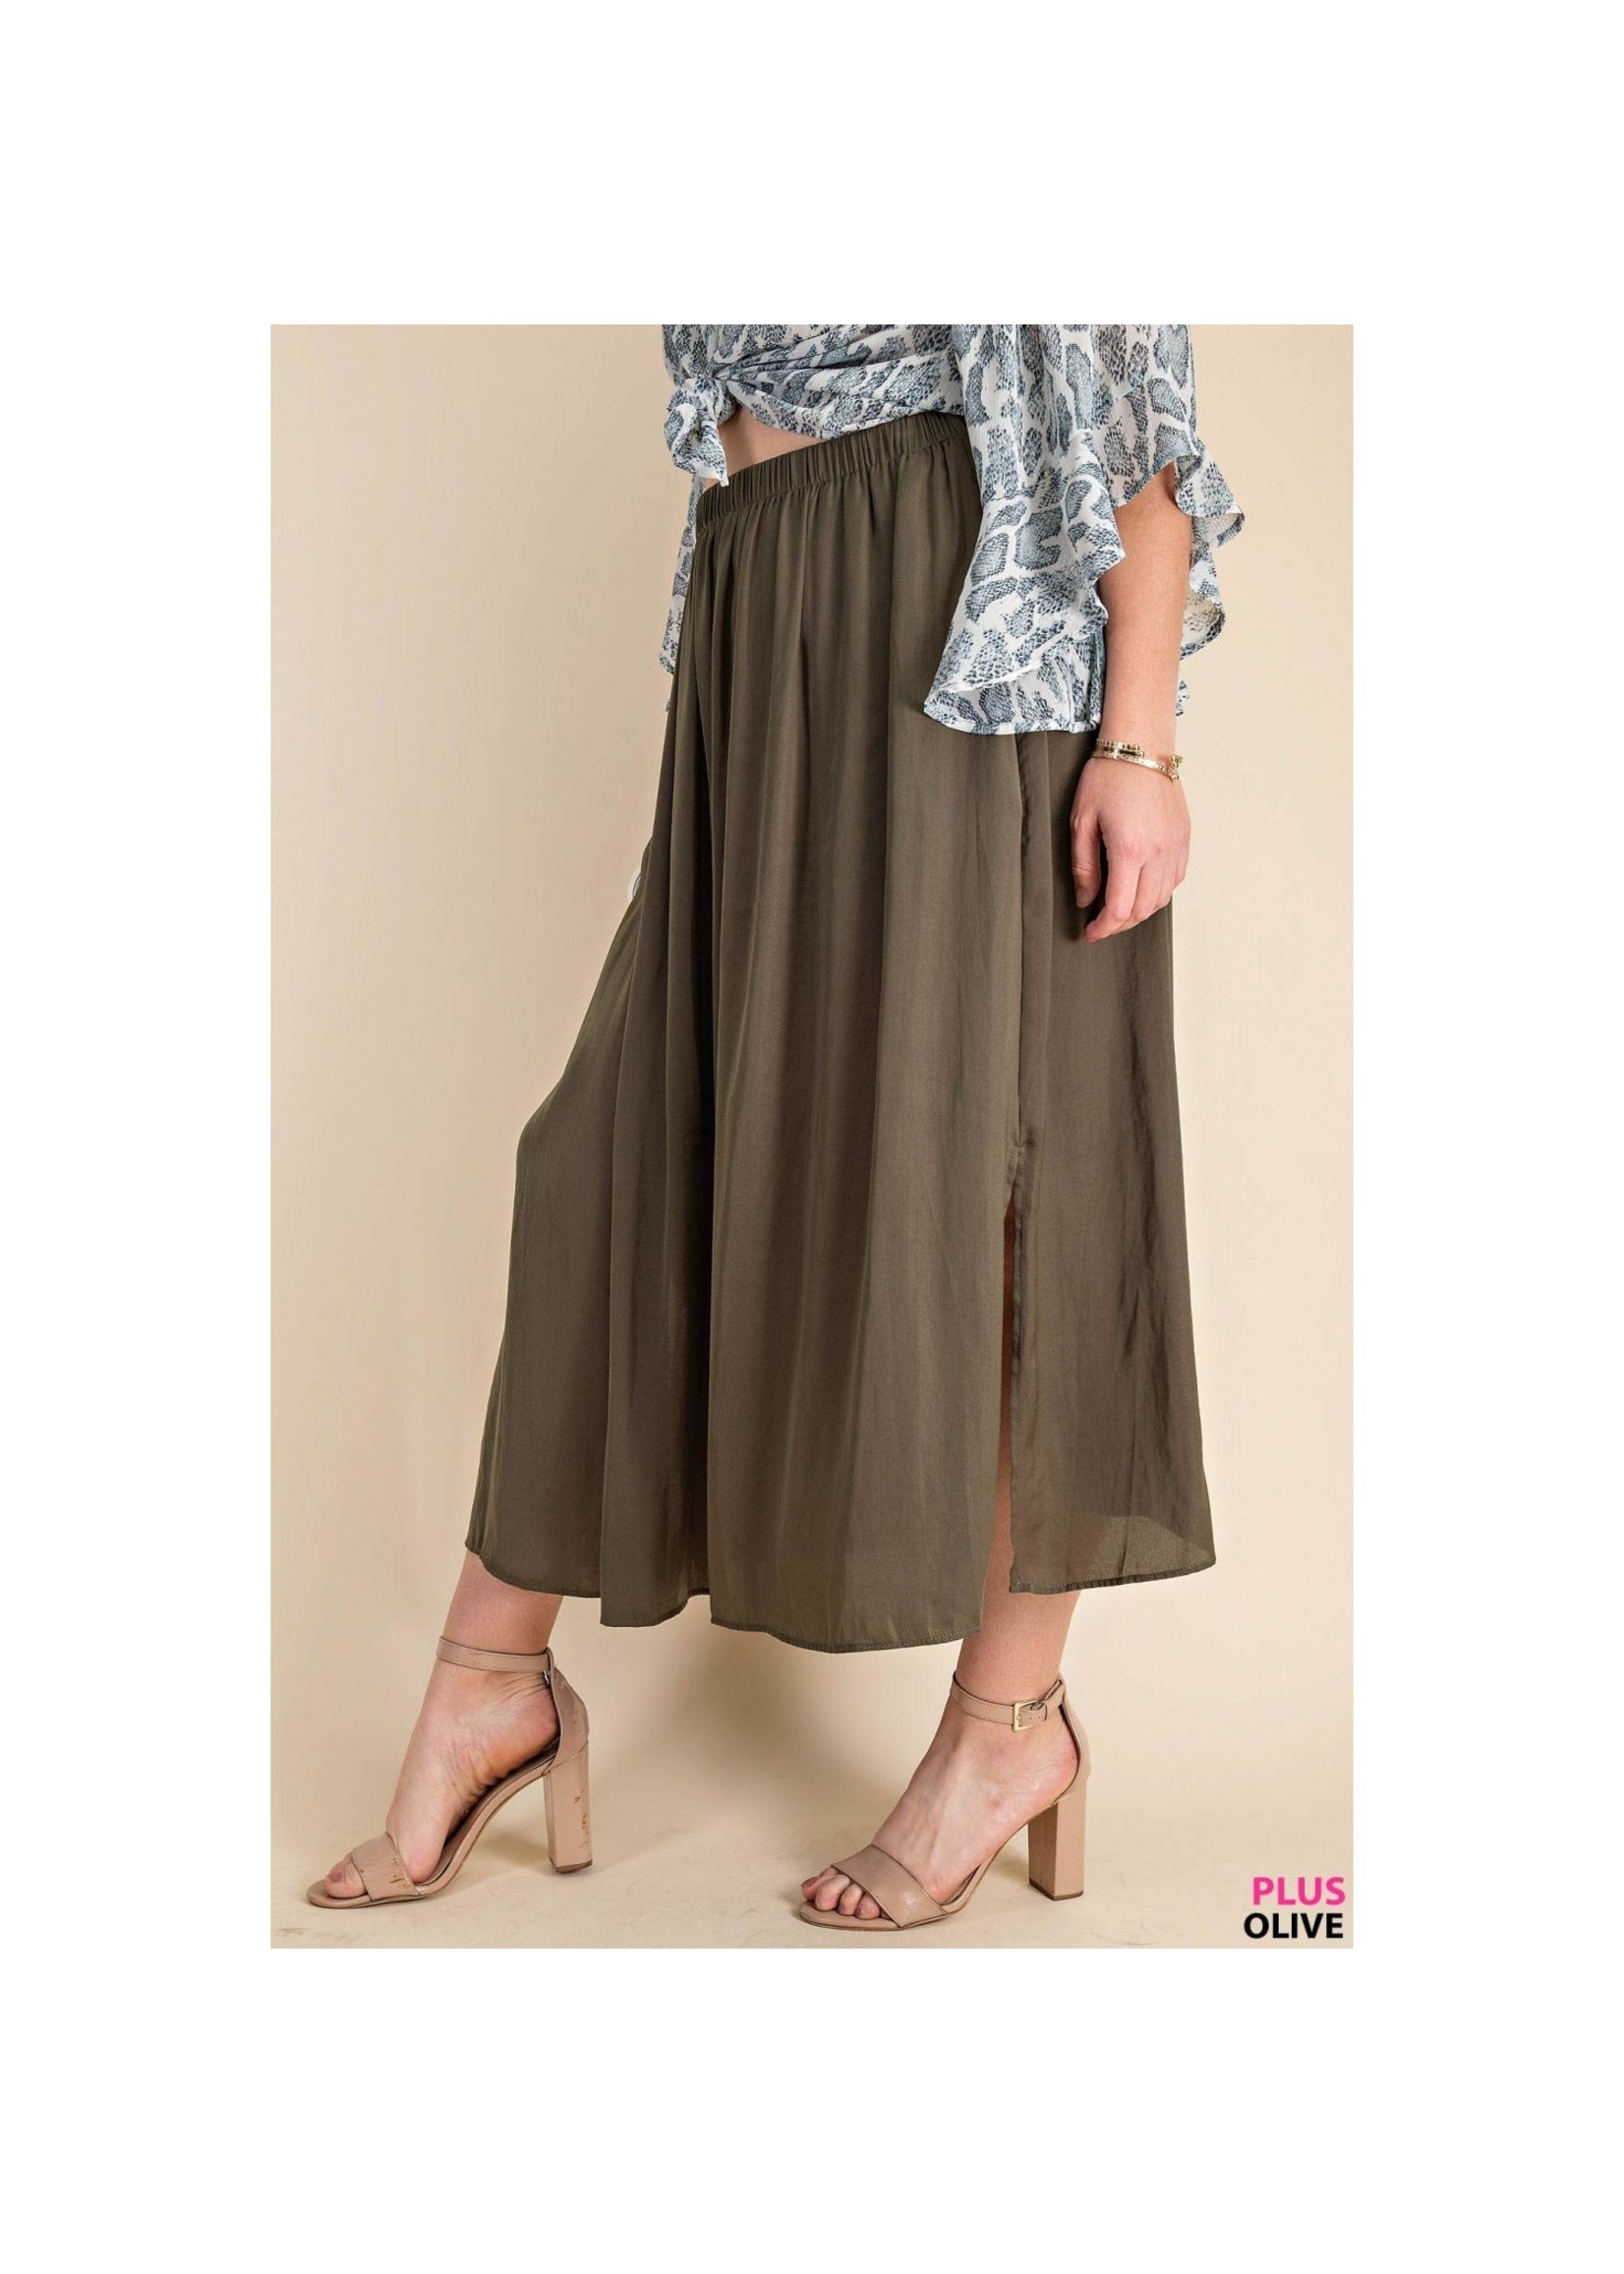 Olive and Leaf Deep Side Slit A-Line Skirt w/ Pockets